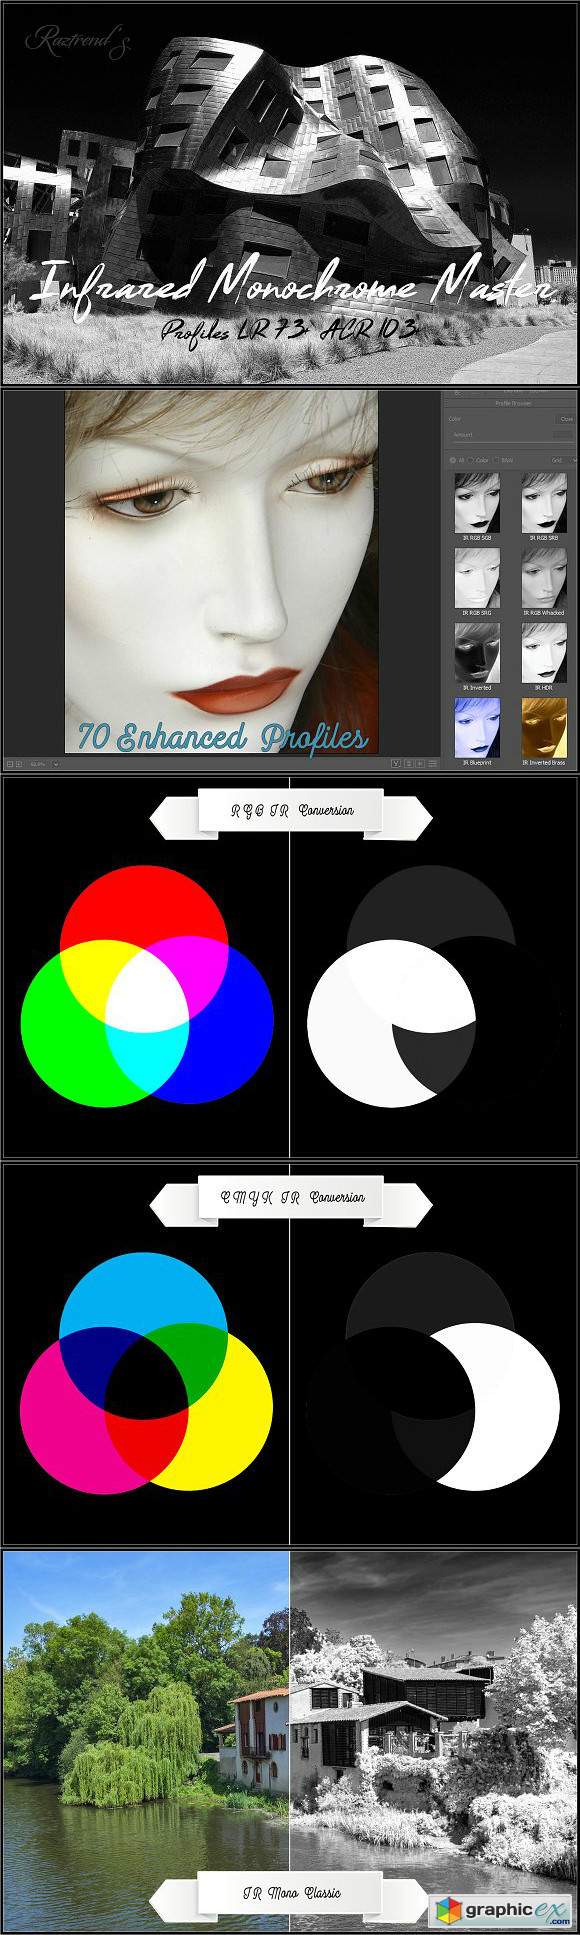 Infrared Monochrome Master Profiles